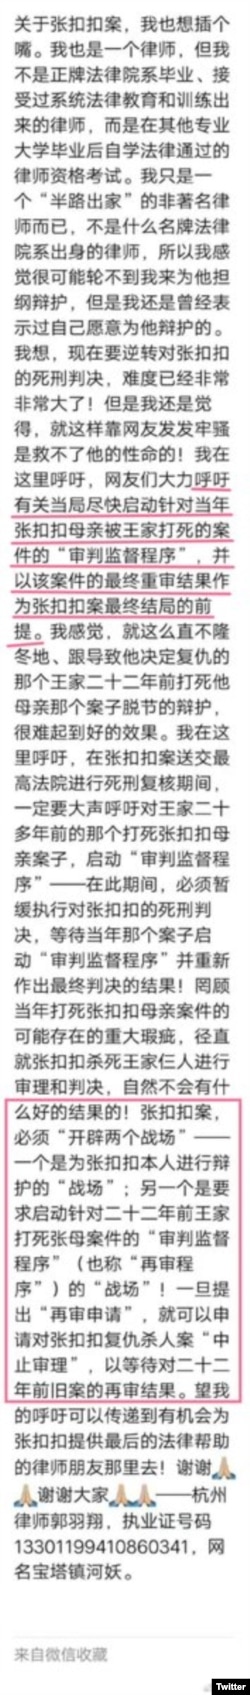 杭州律师郭羽翔文章截图